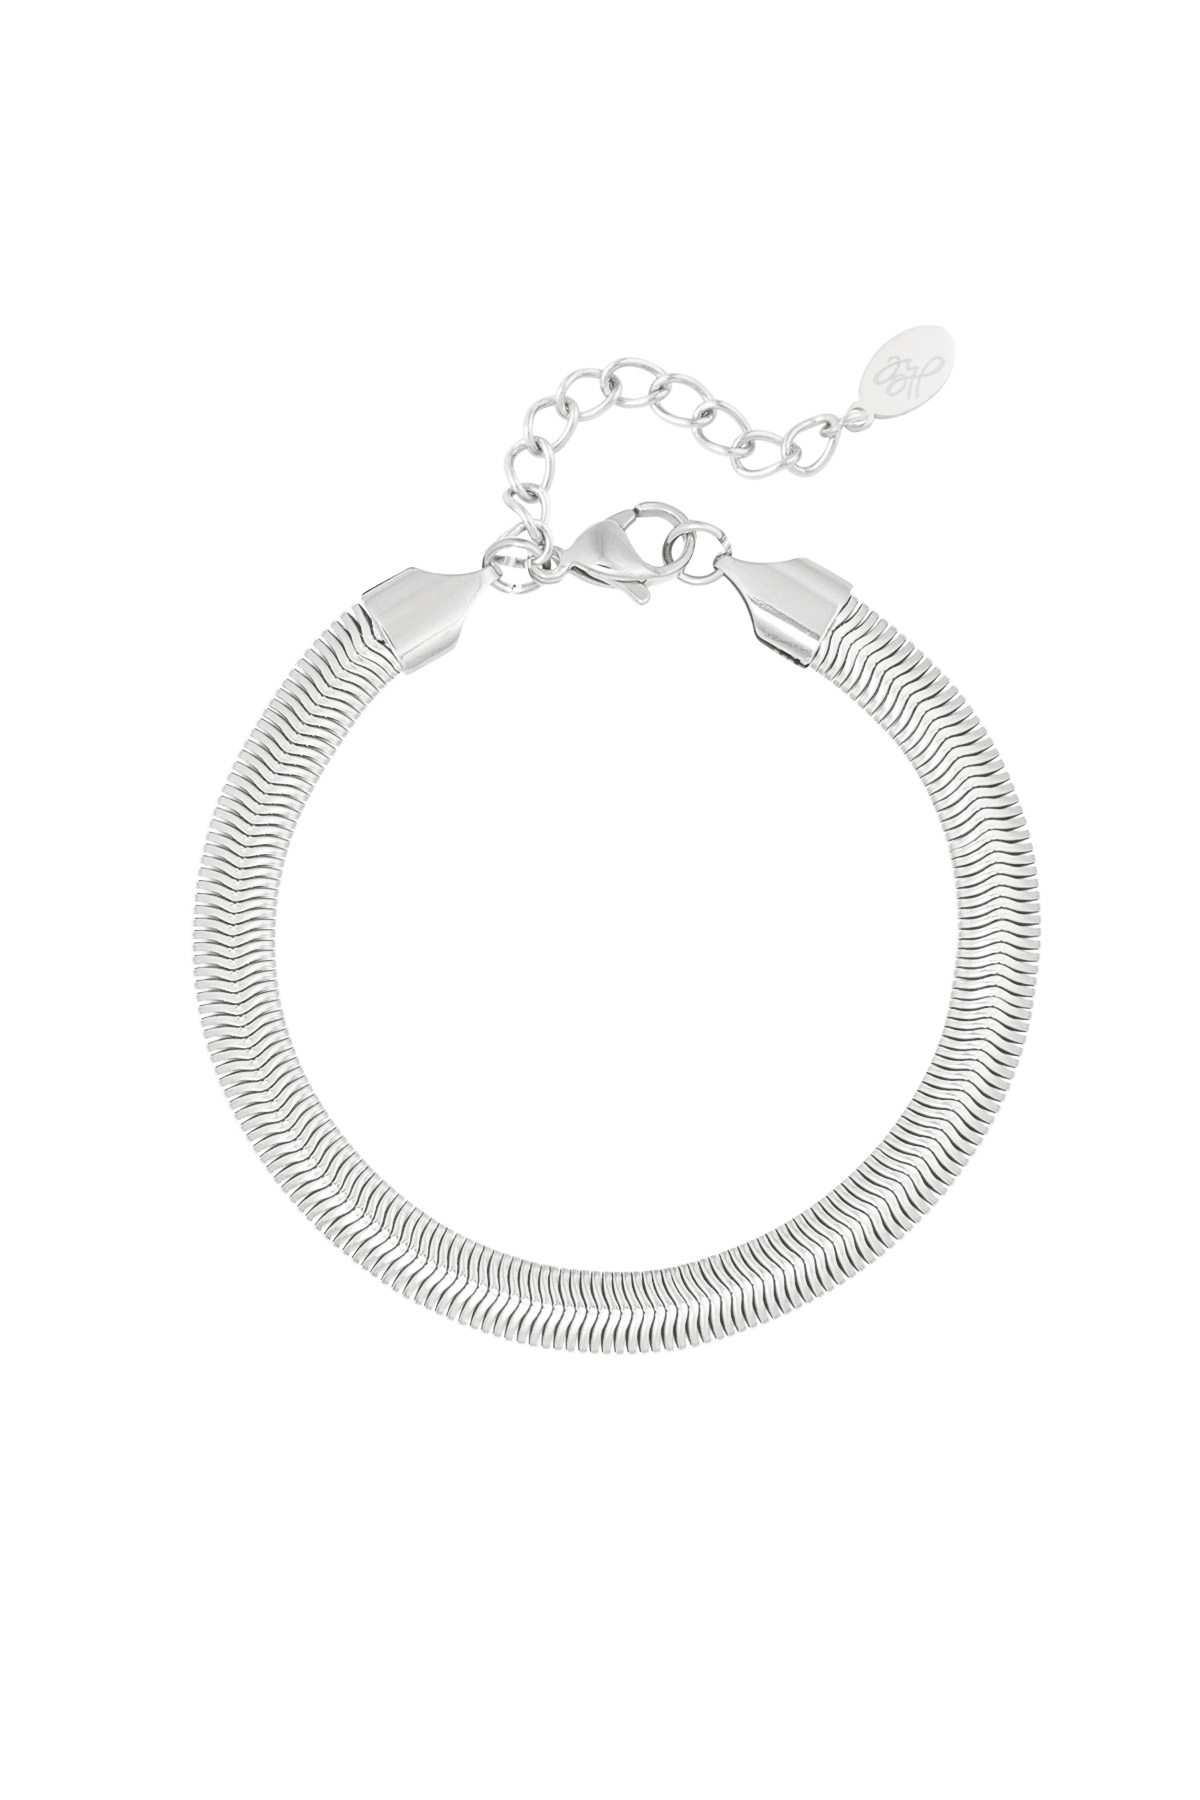 Bracelet flat coarse - silver-6.0MM